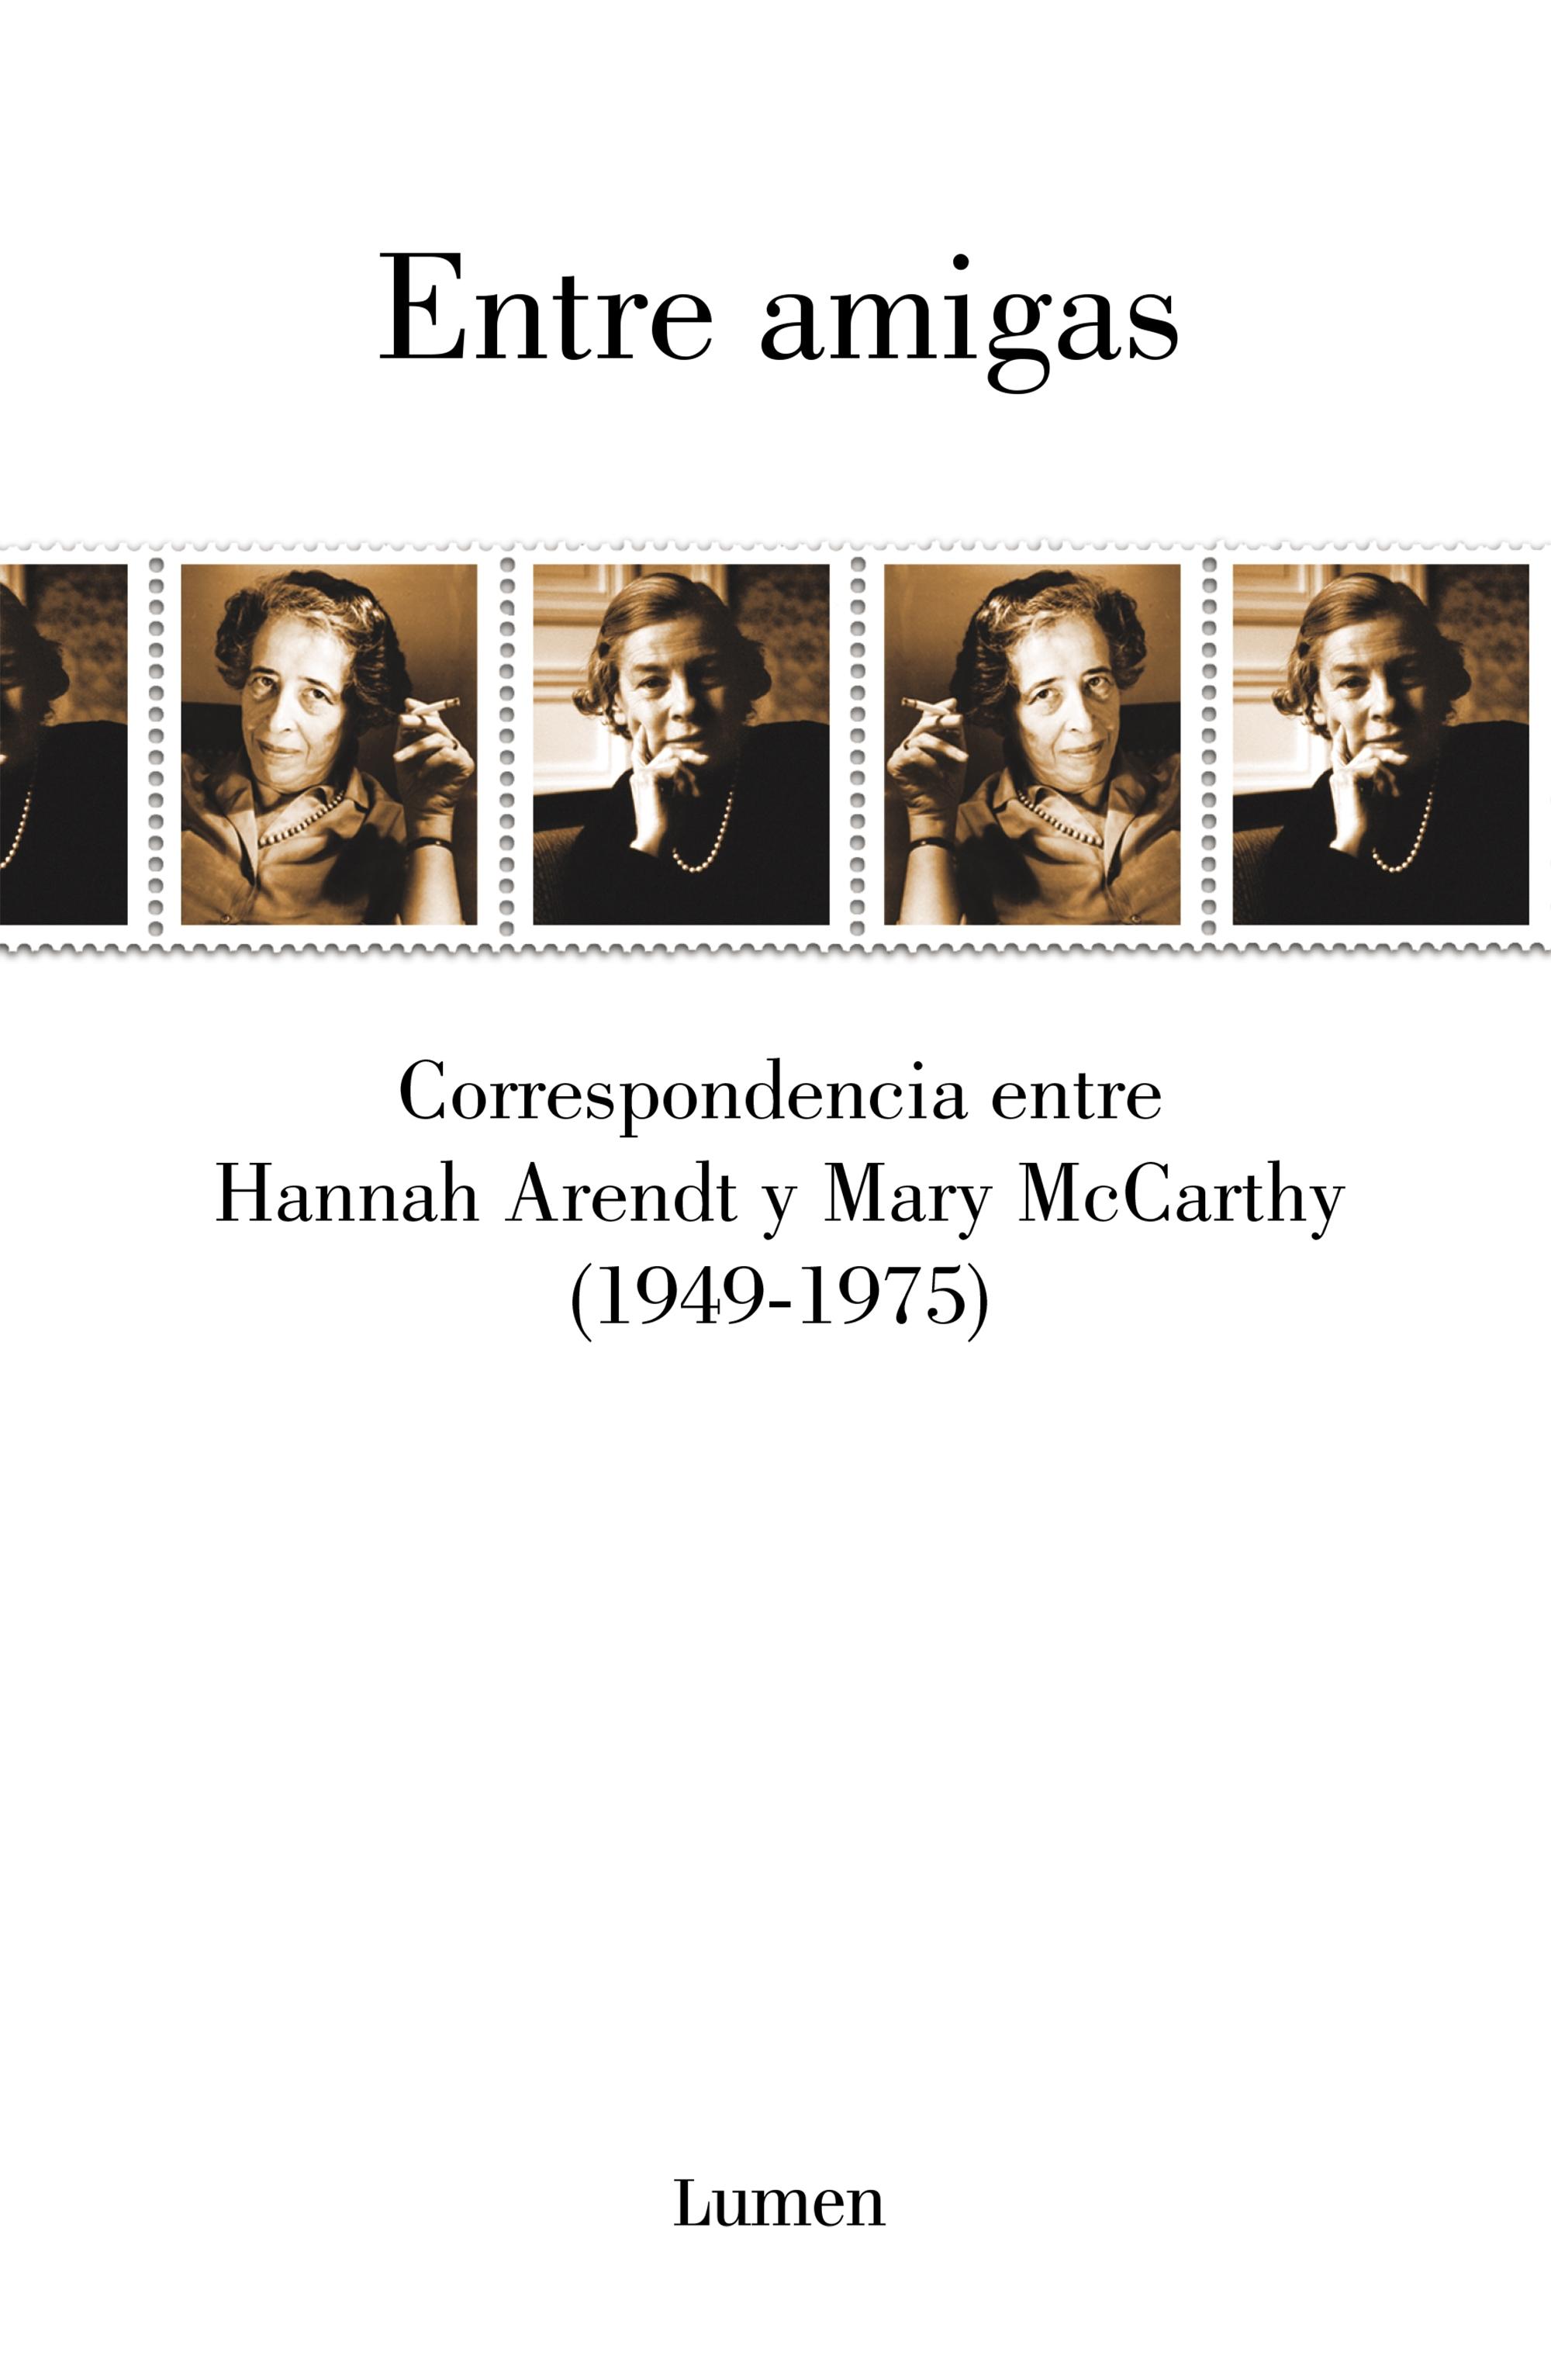 Entre Amigas "Correspondencia Entre Hannah Arendt y Mary Mccarthy 1949-1975"